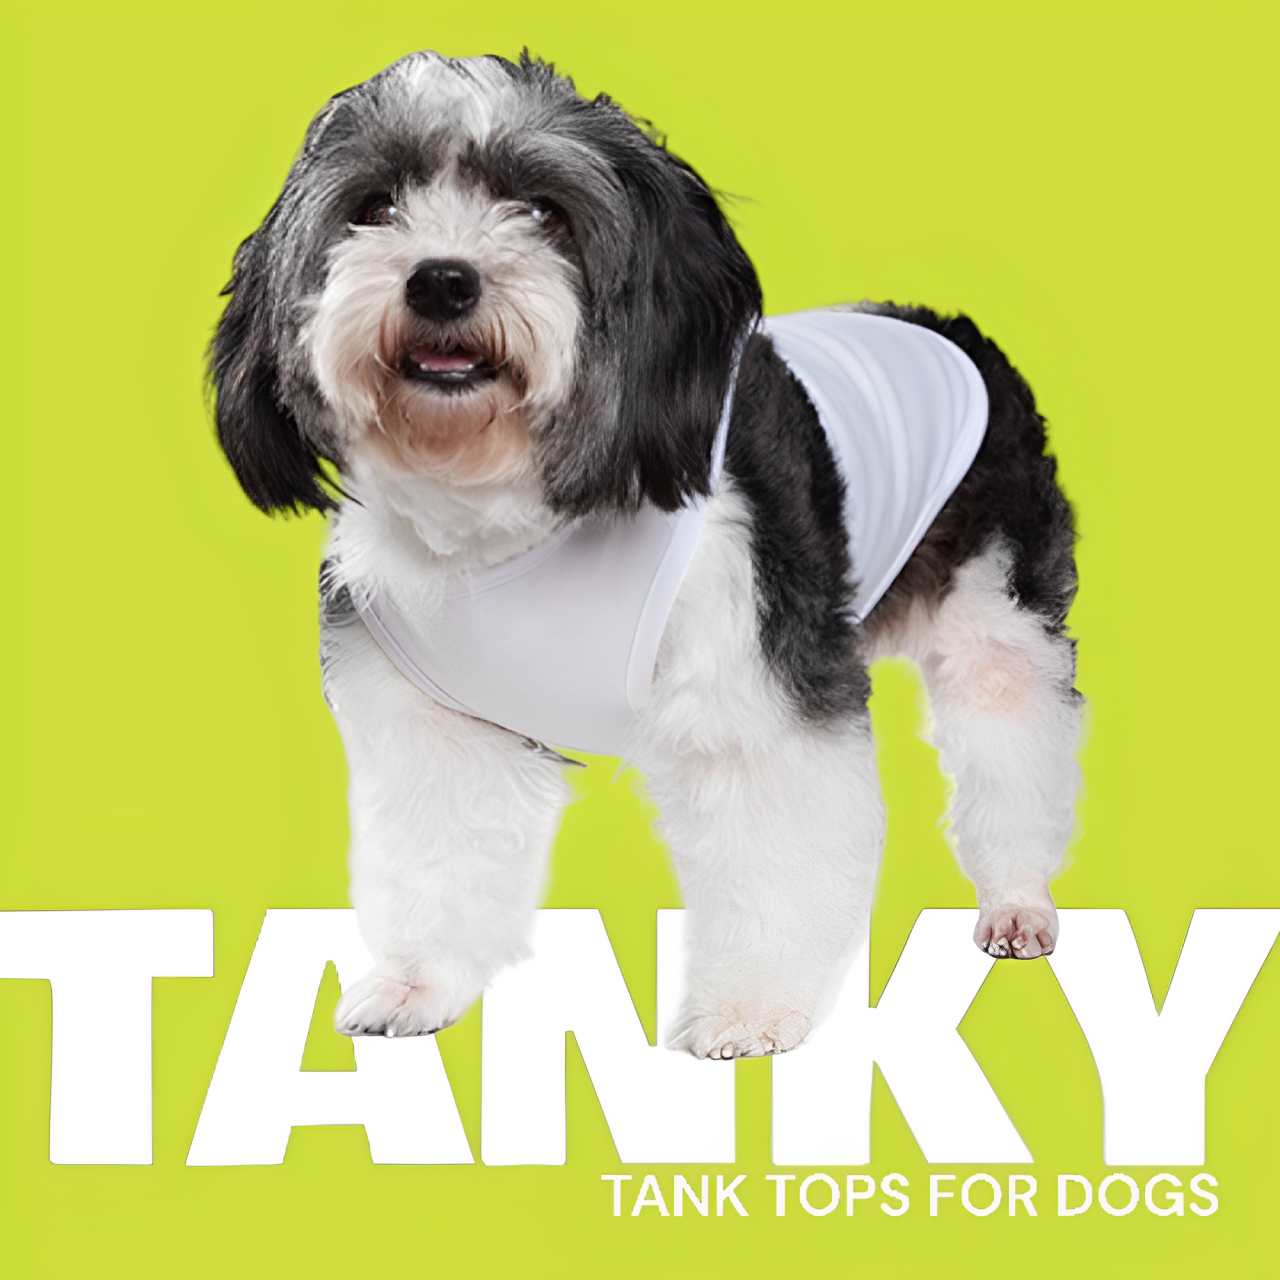 Talking Dog Club Tanky&